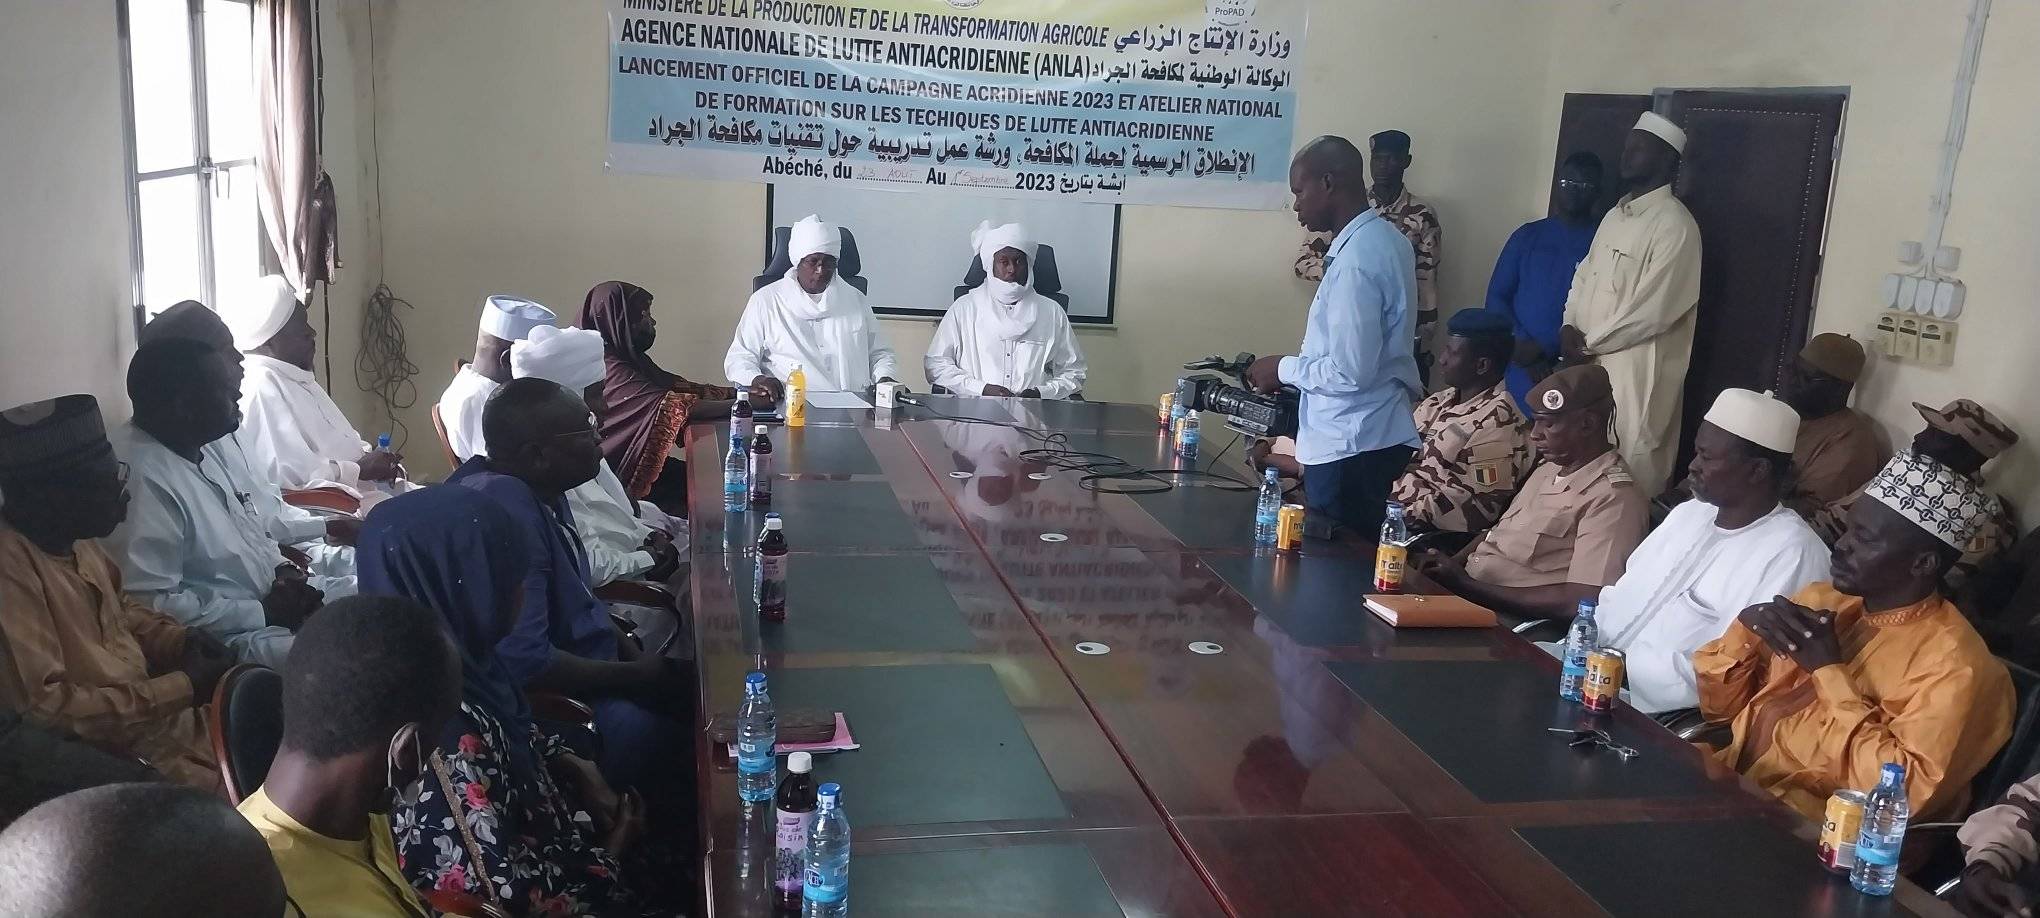 Tchad : lancement de la campagne antiacridienne à Abéché